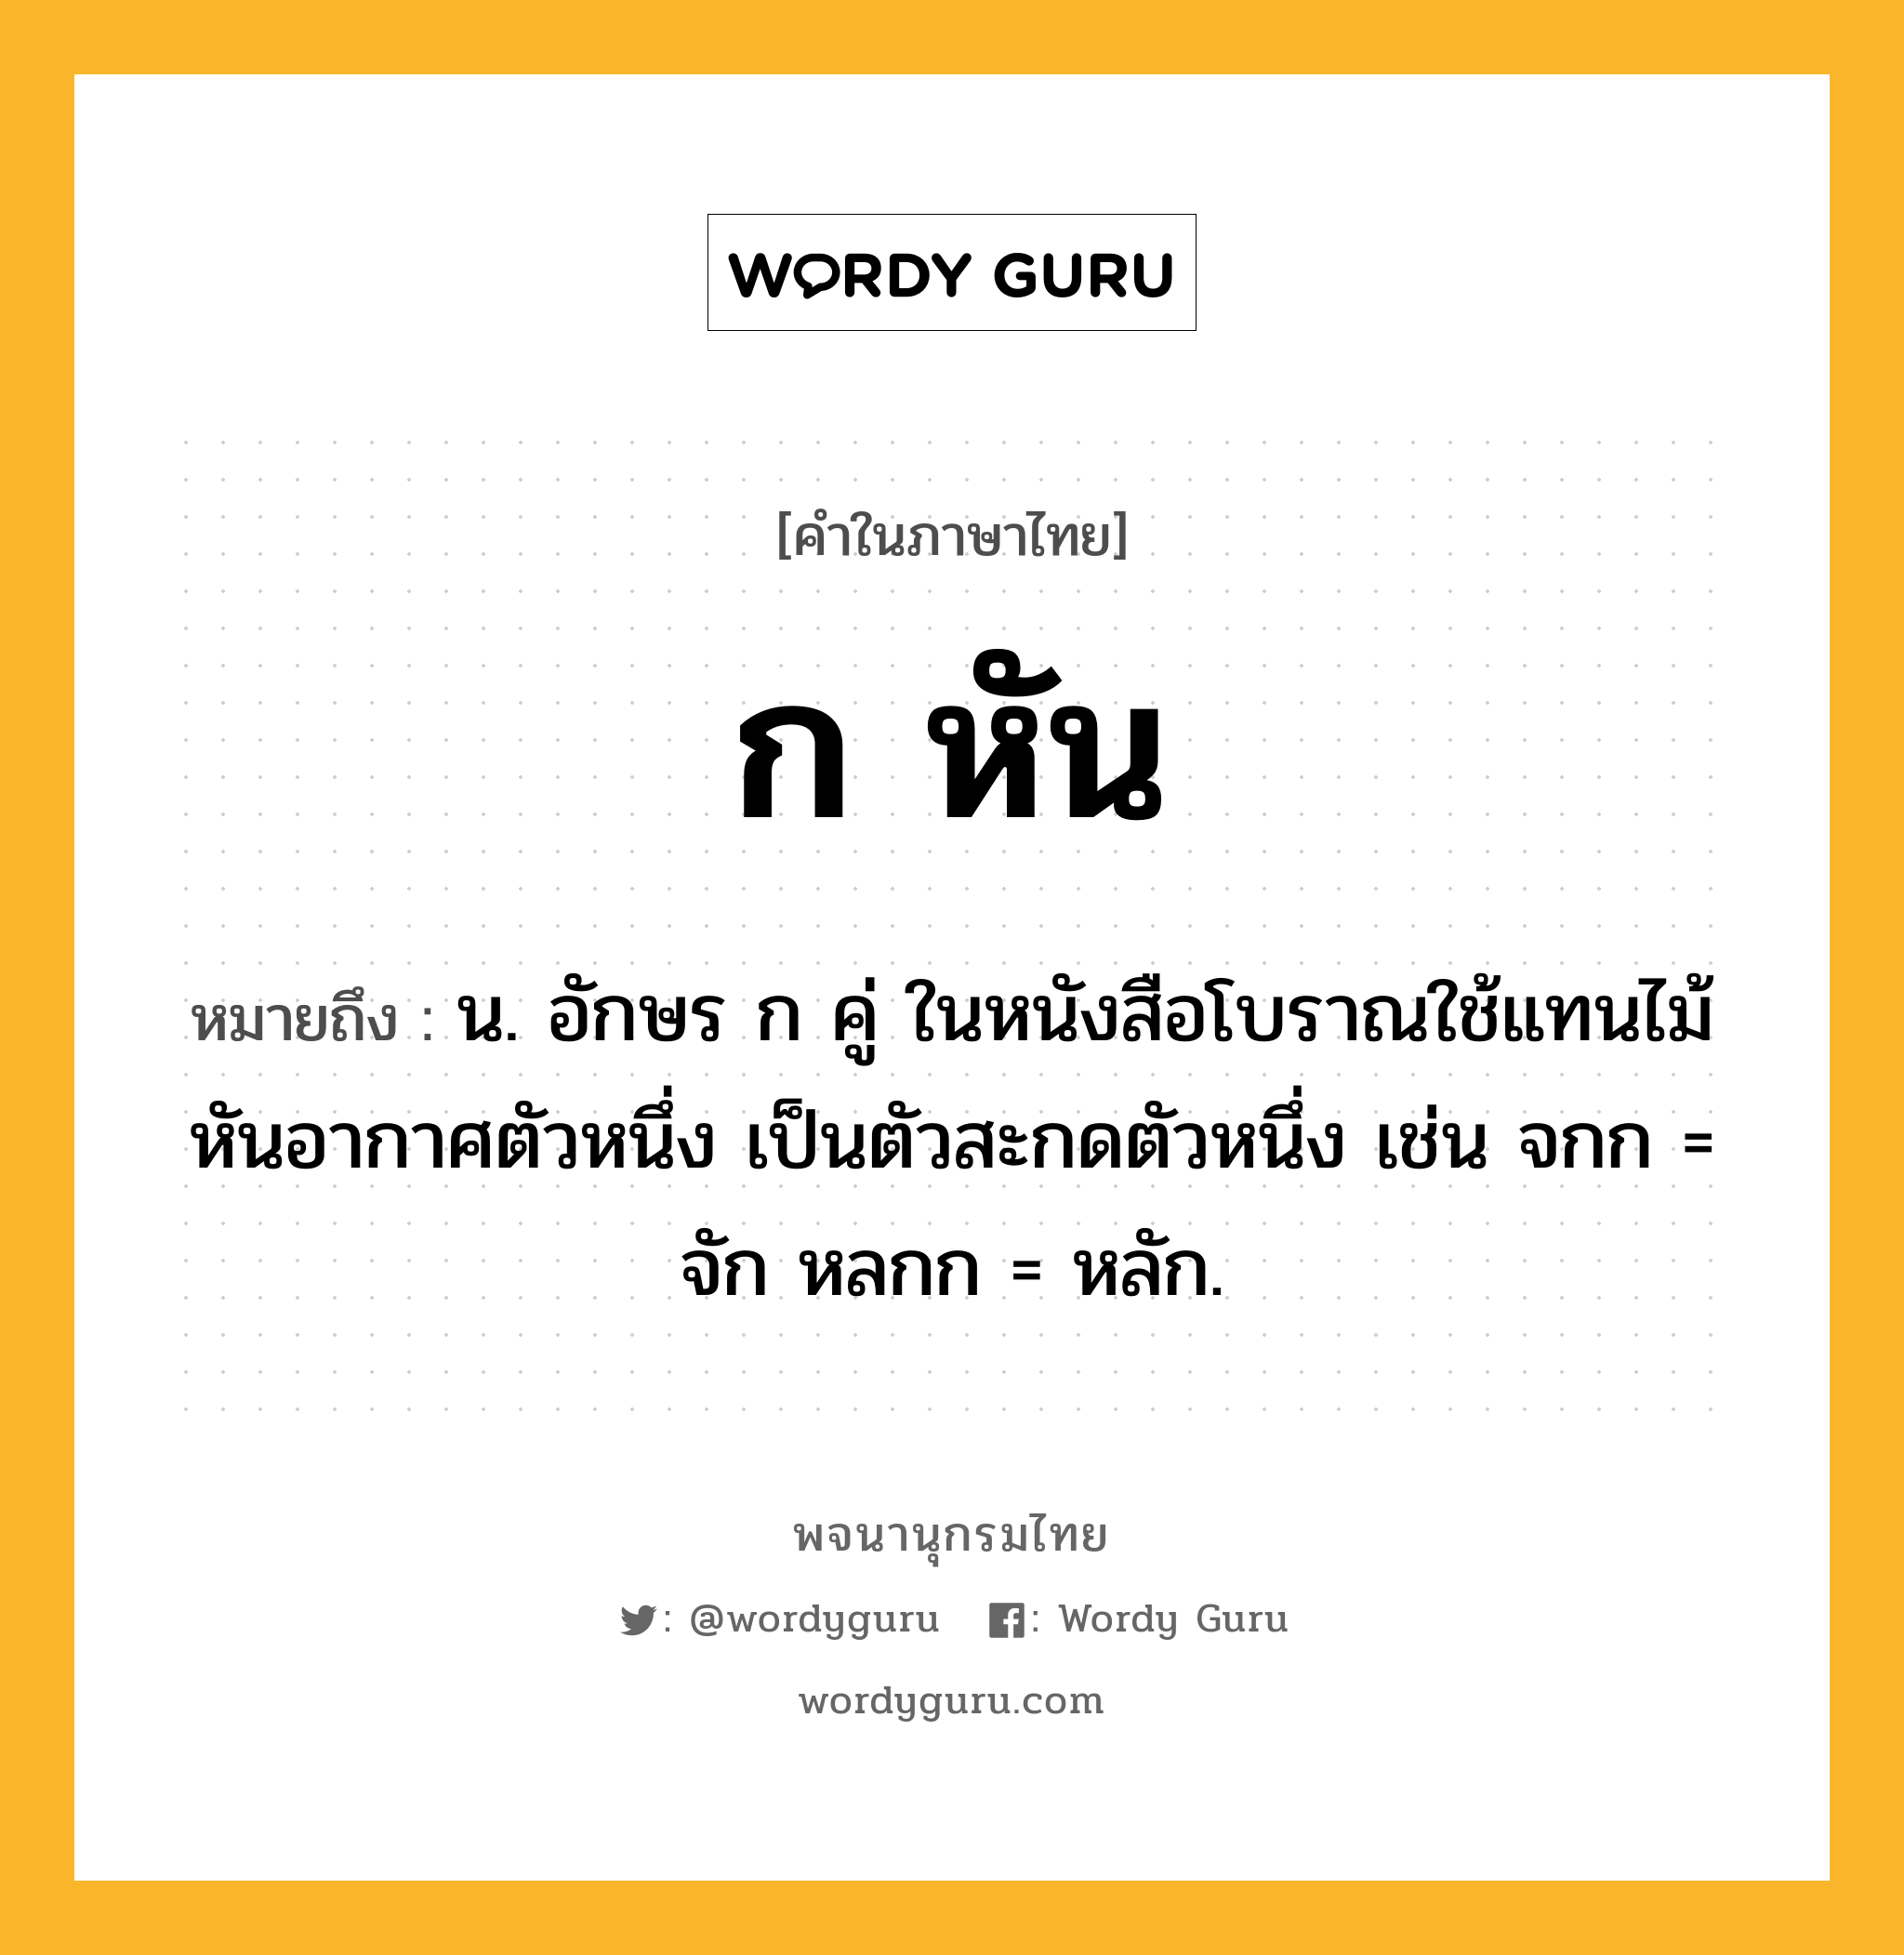 ก หัน ความหมาย หมายถึงอะไร?, คำในภาษาไทย ก หัน หมายถึง น. อักษร ก คู่ ในหนังสือโบราณใช้แทนไม้หันอากาศตัวหนึ่ง เป็นตัวสะกดตัวหนึ่ง เช่น จกก = จัก หลกก = หลัก.